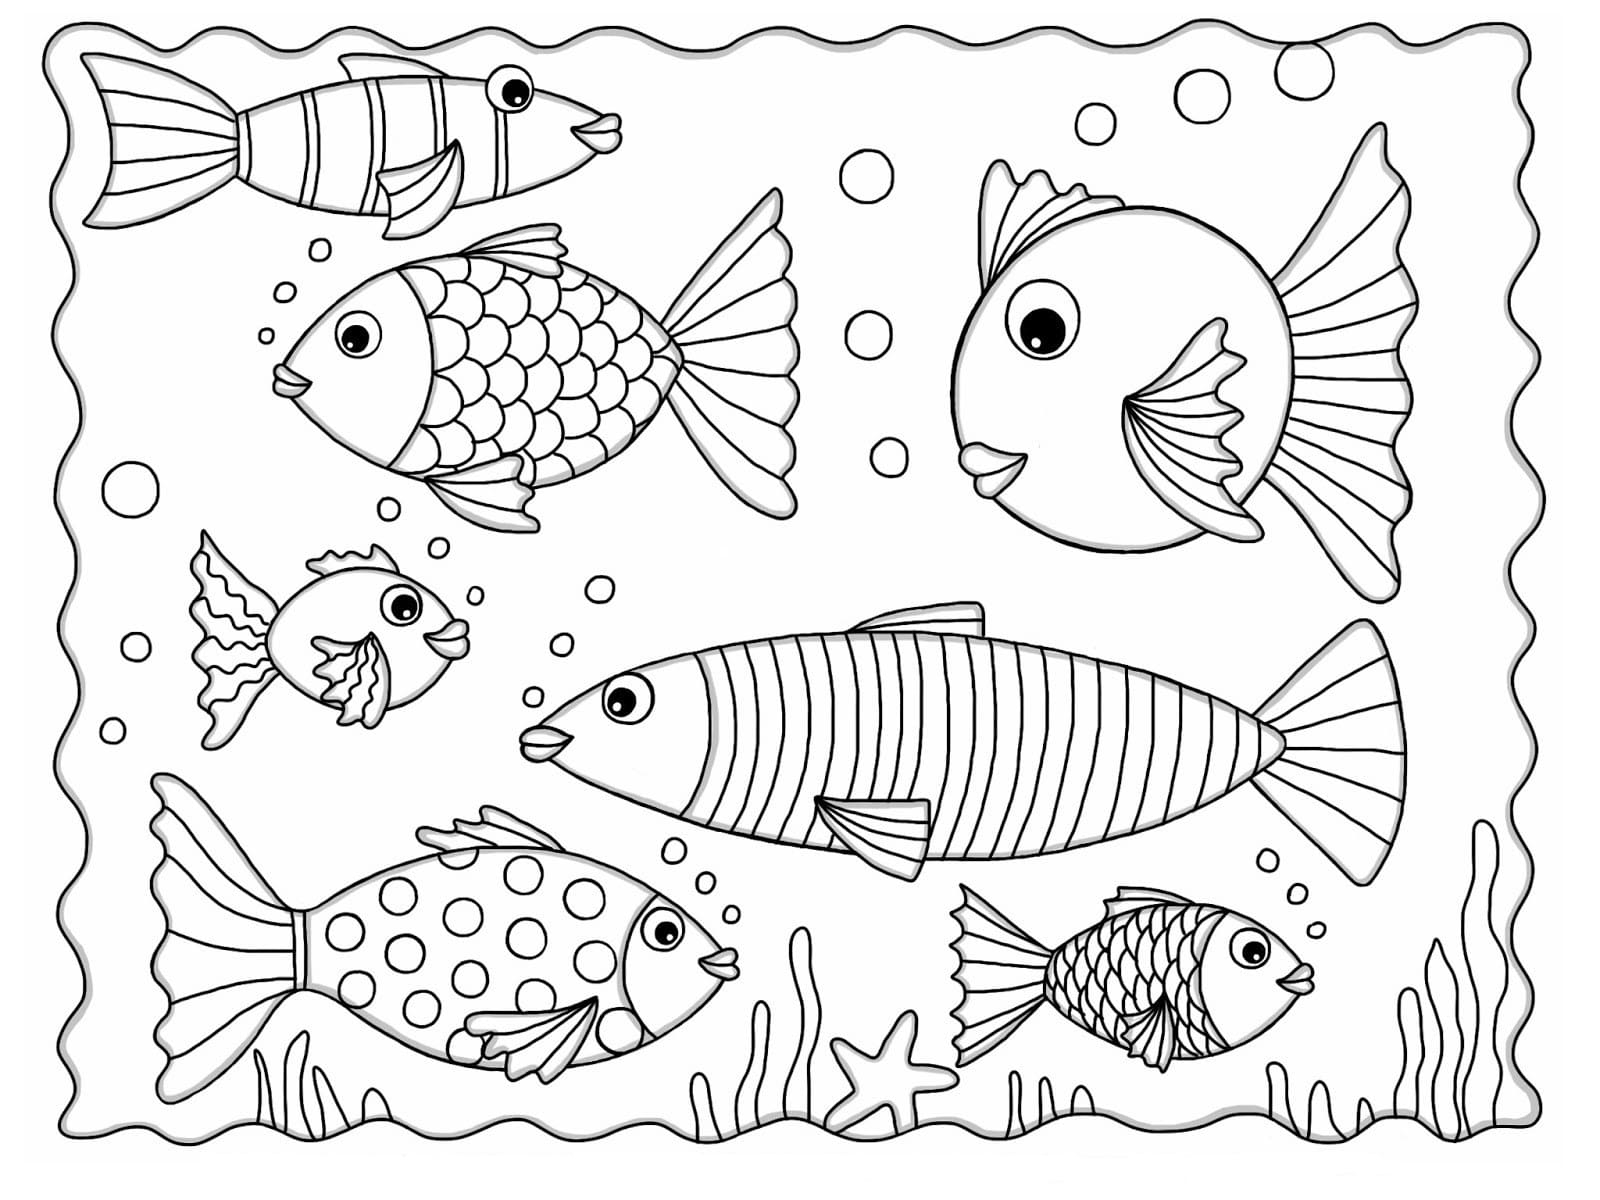 Раскраски аквариумных рыбок. Раскраска рыбок для аквариумов скачать